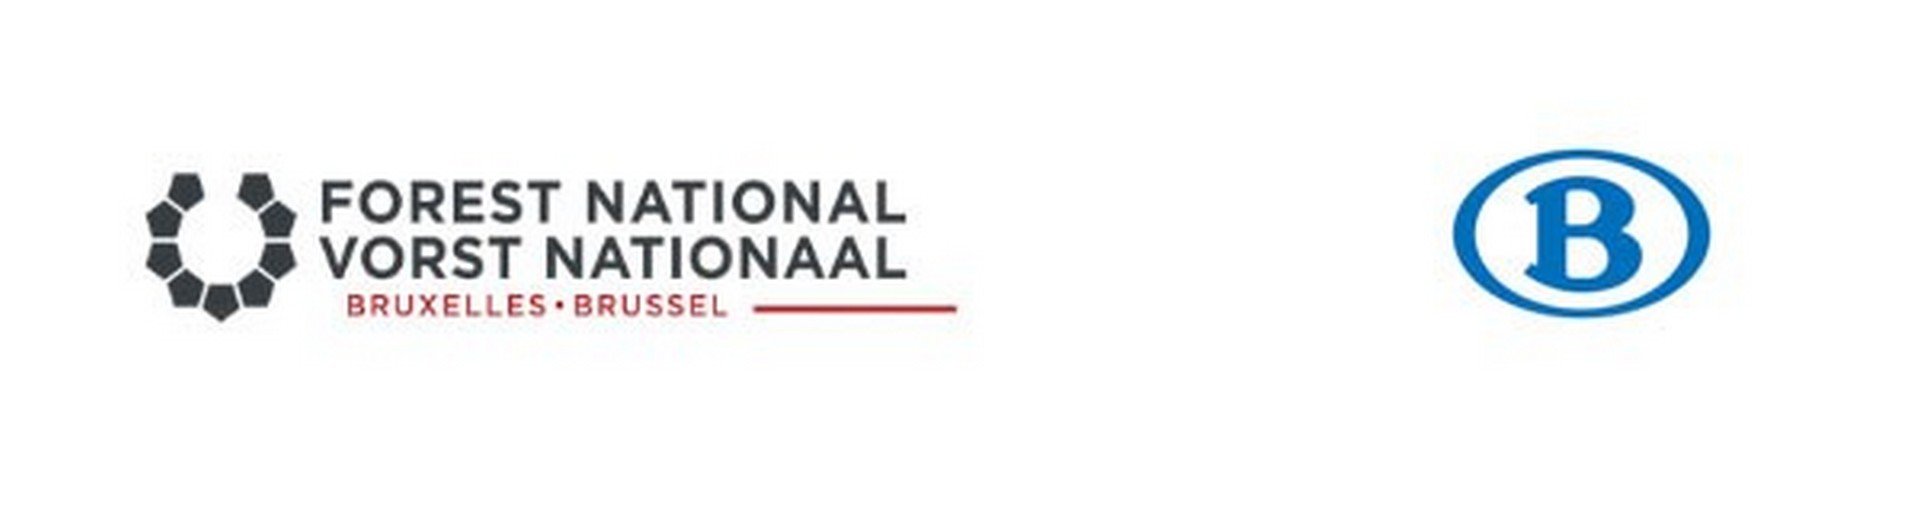 VORST NATIONAAL EN NMBS LANCEREN BRAVO! TICKET - Logo Vorst Nationaal